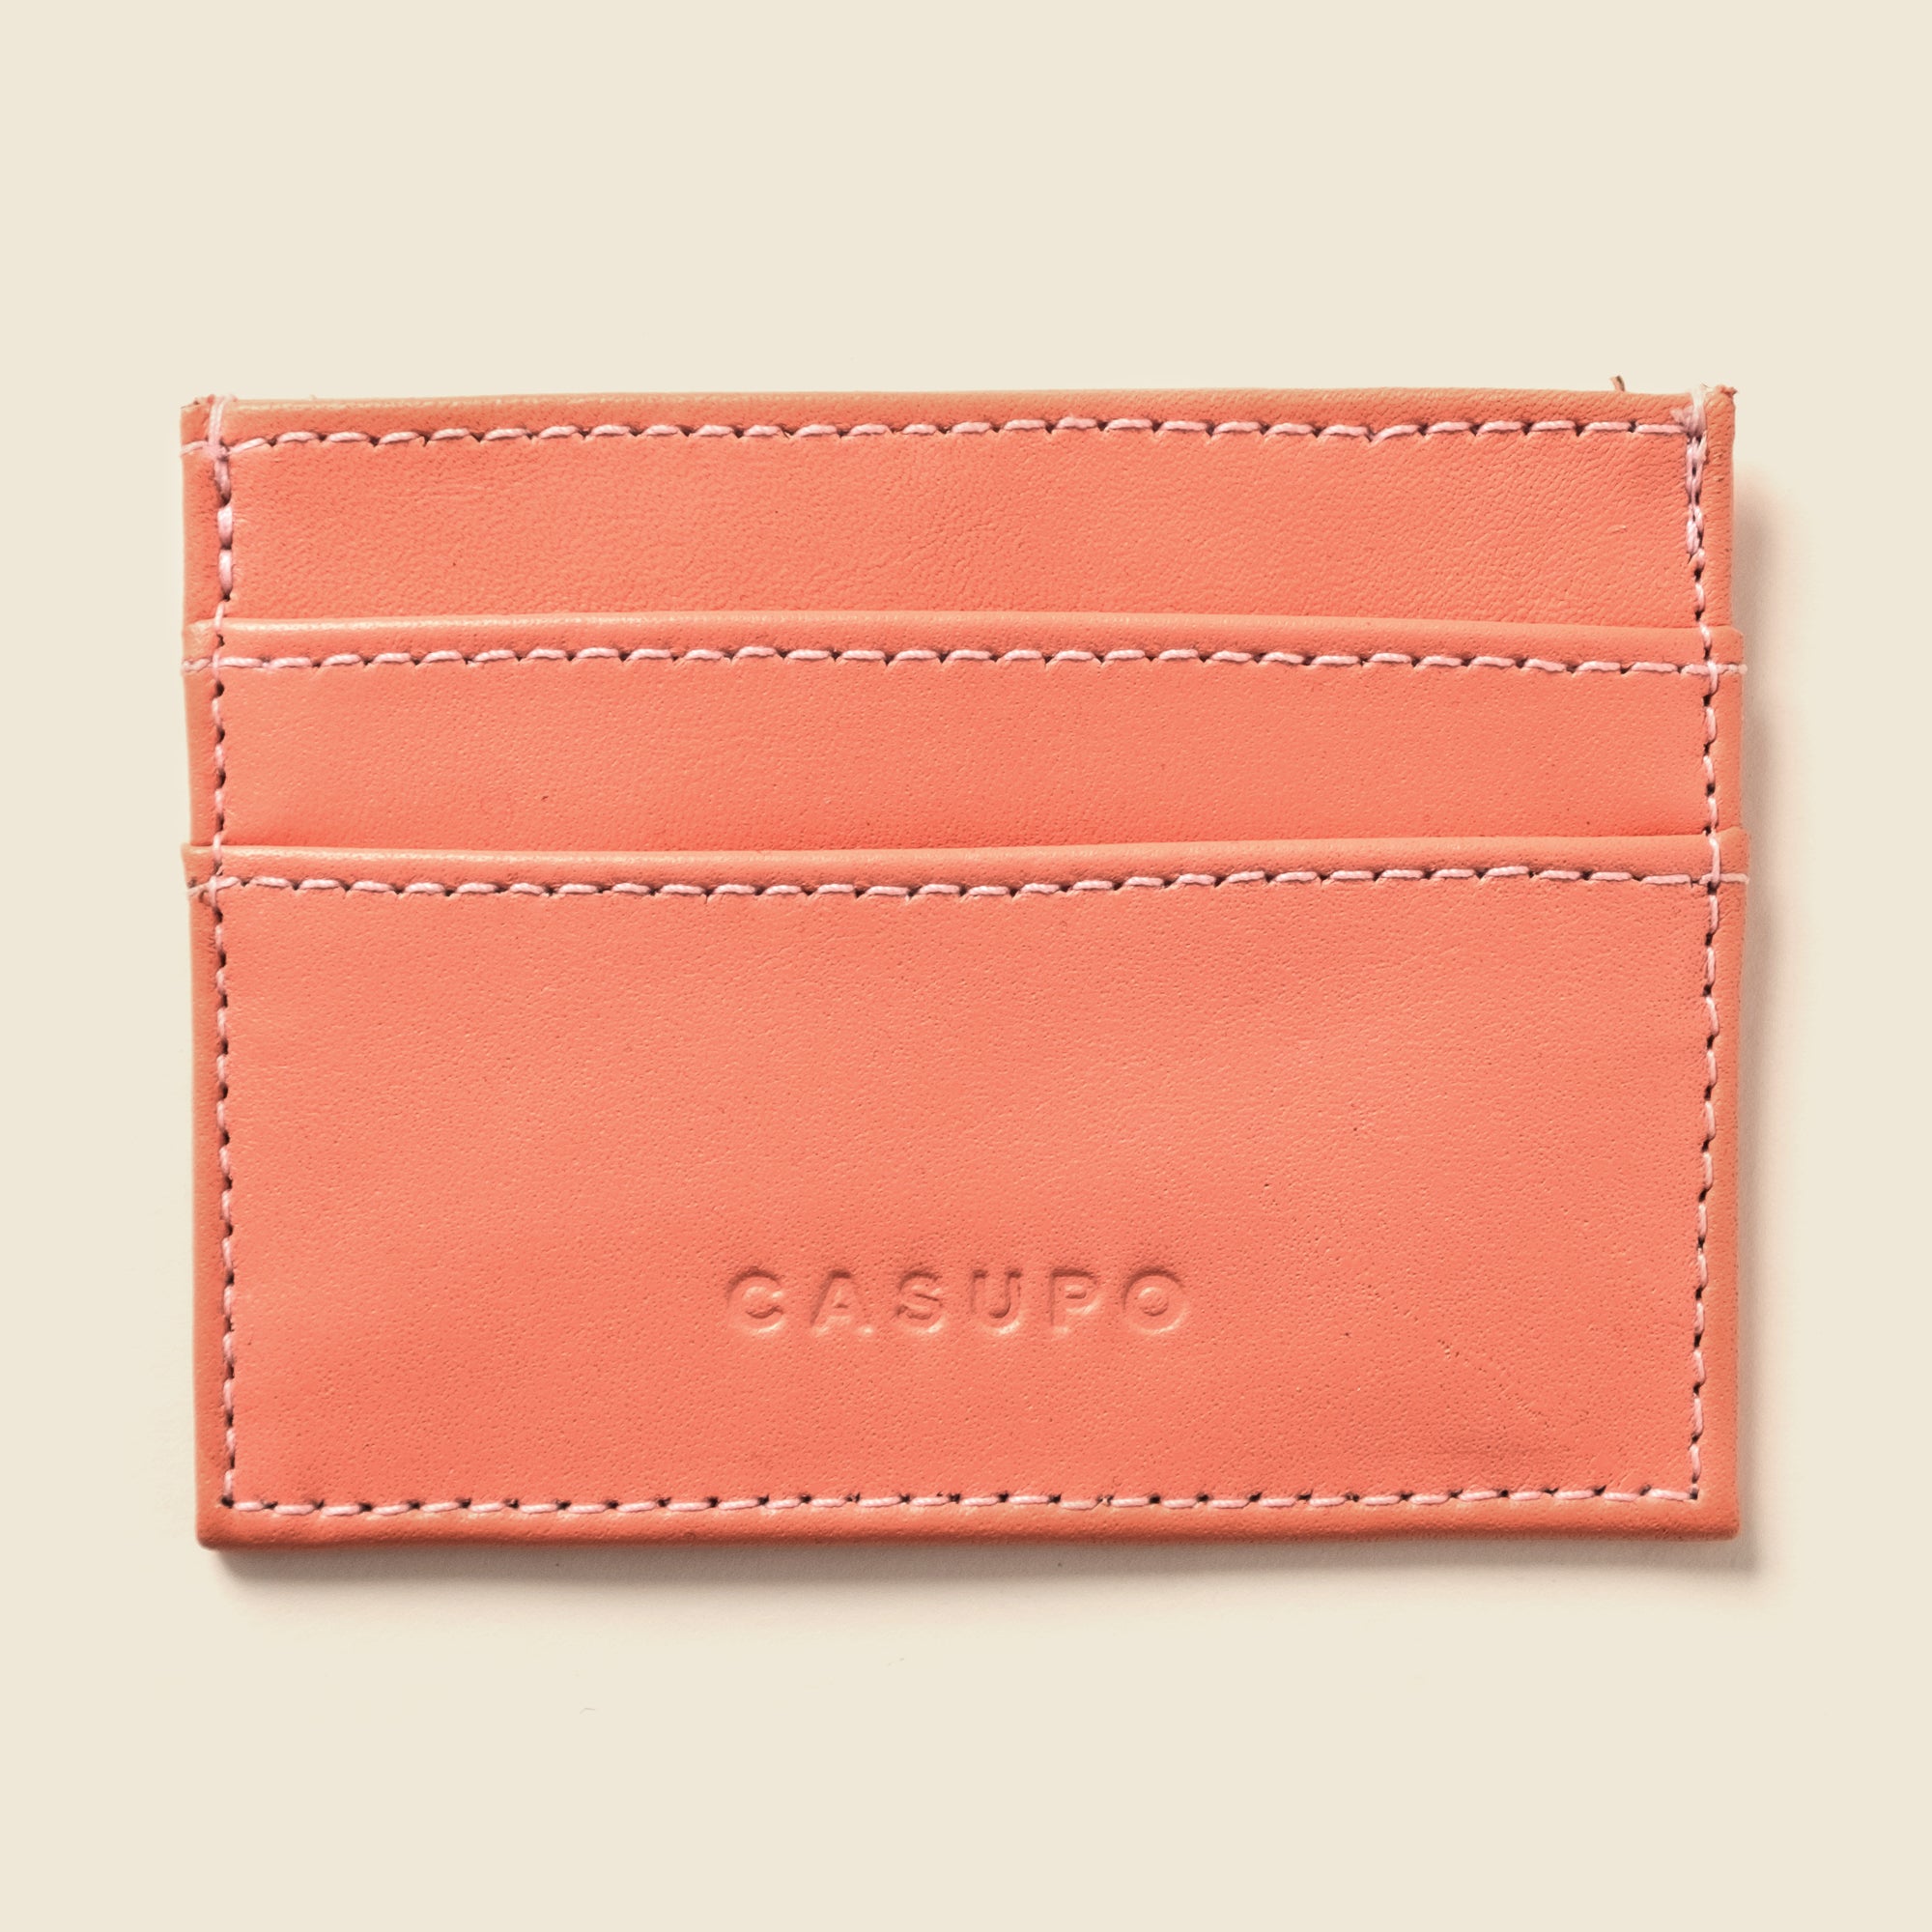 Pastel pink leather slim cardholder wallet for cards for men